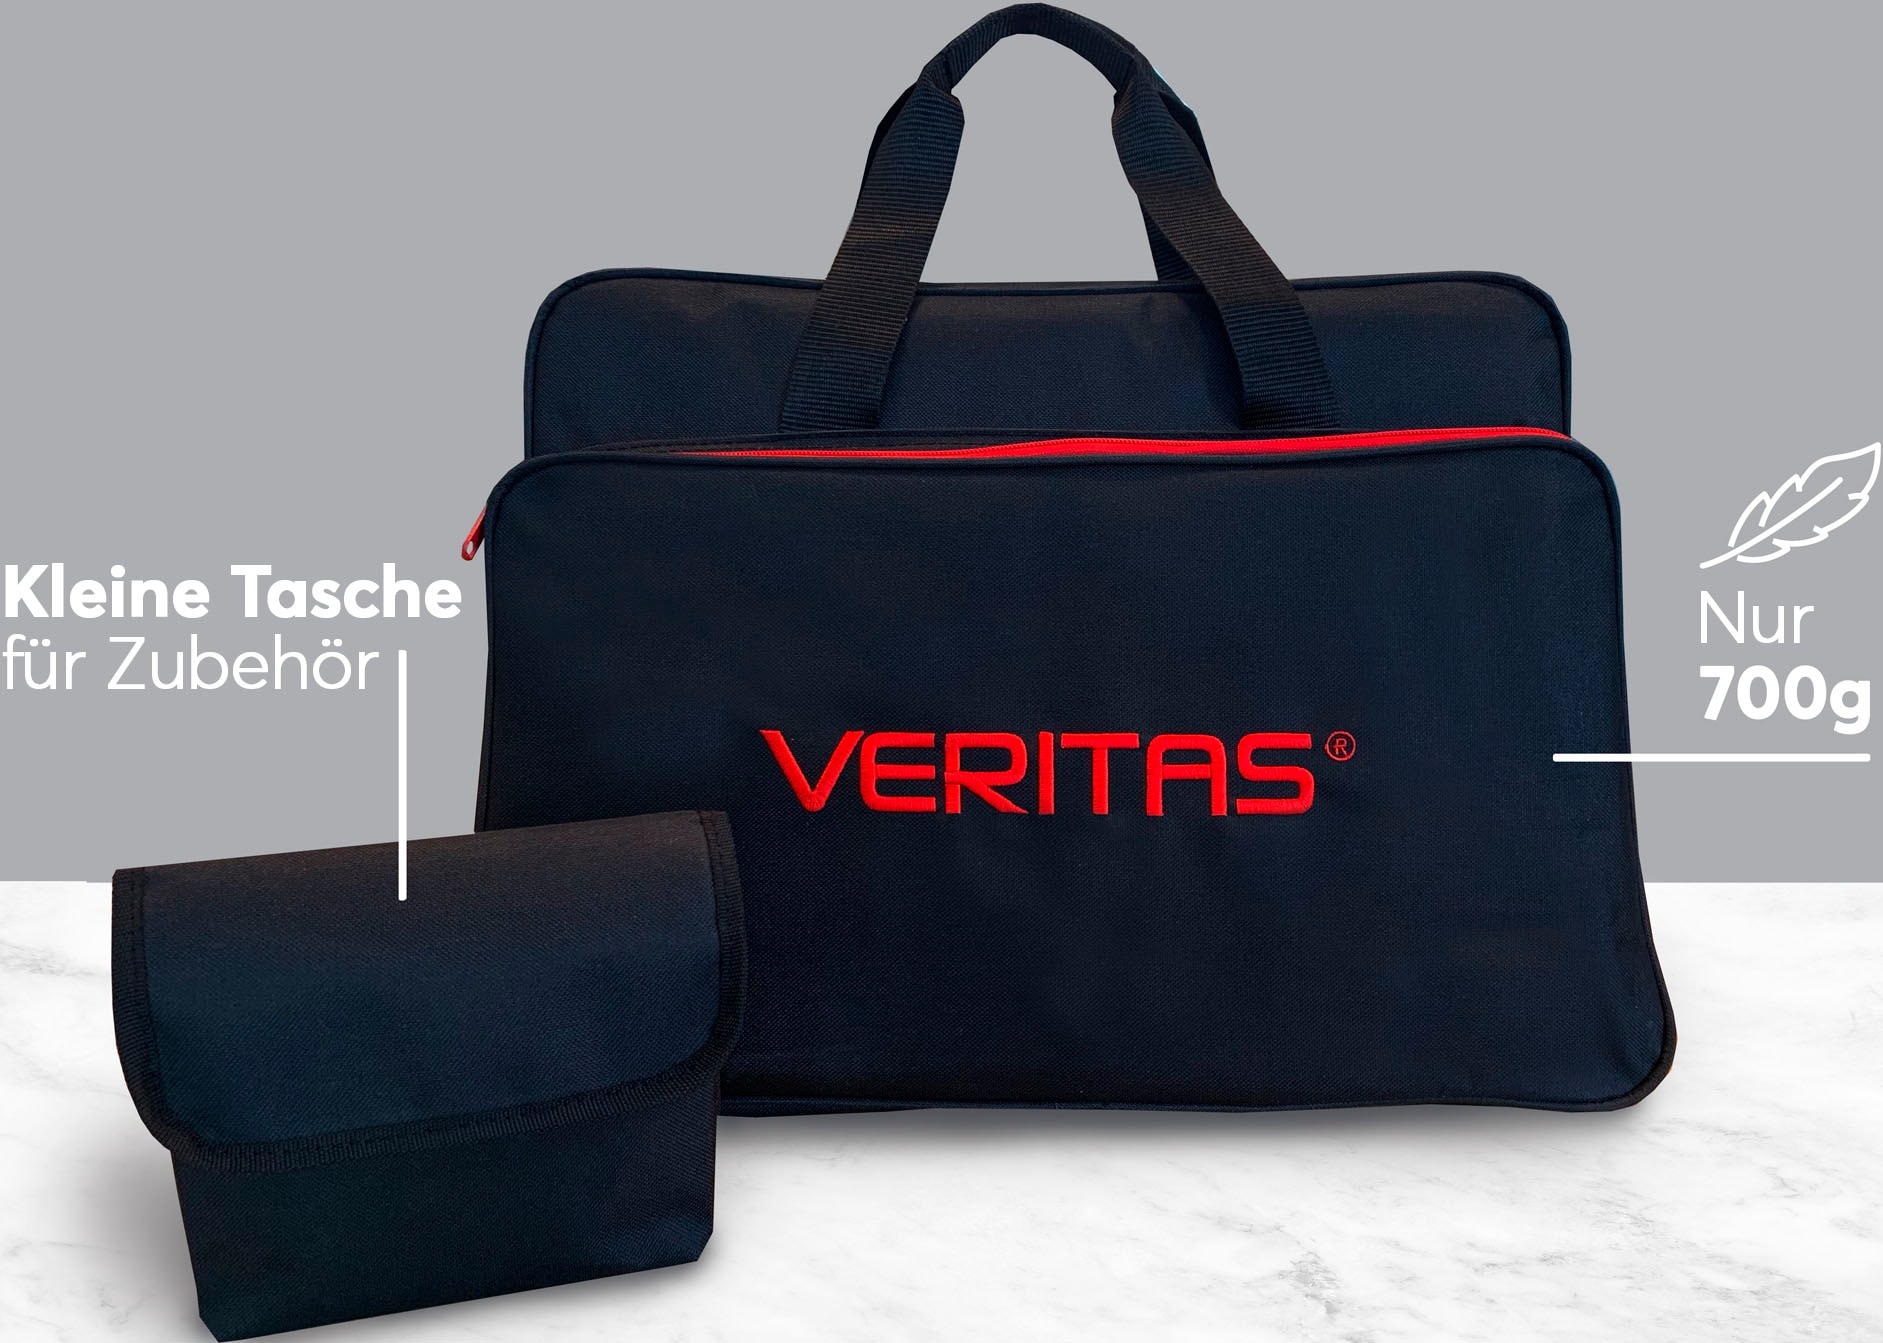 ➥ Veritas Nähmaschinentasche Jelmoli-Versand jetzt MACHINE schwarz/rot bestellen «VERITAS»«, SEWING BAG »1233-SP-002 